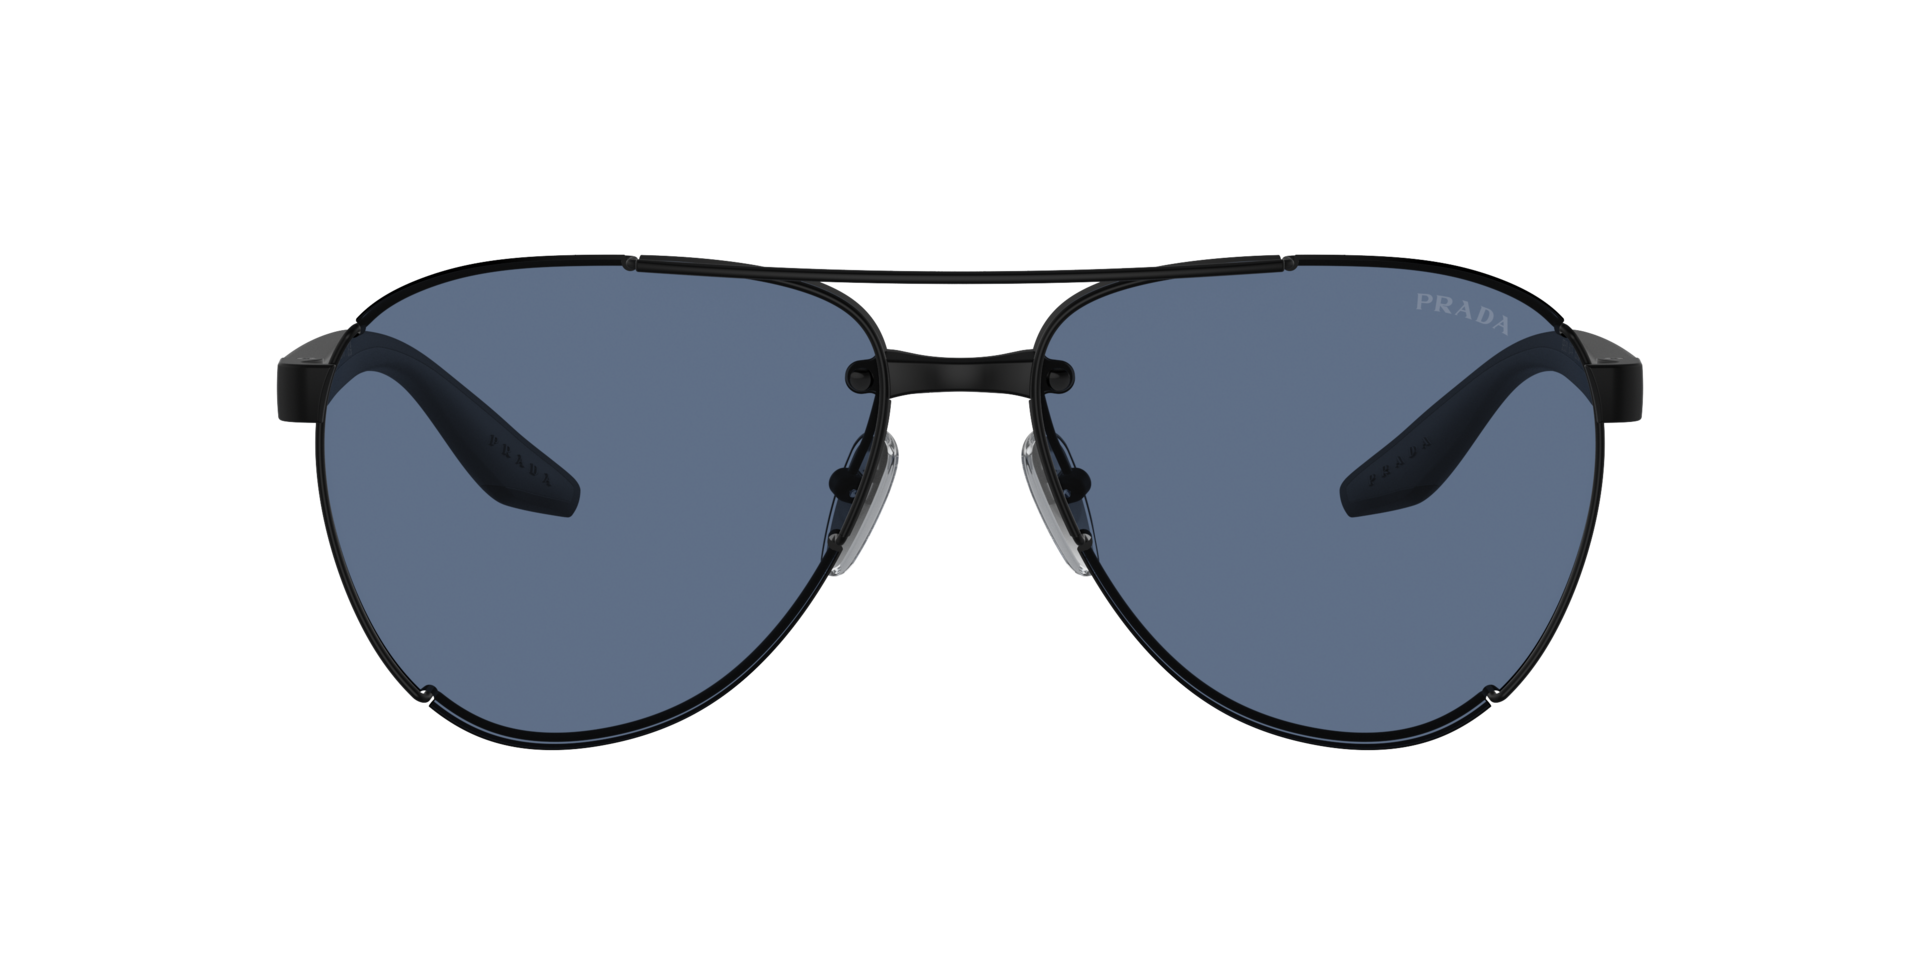 Das Bild zeigt die Sonnenbrille PS51YS 1BO06A von der Marke Prada Linea Rossa in schwarz.